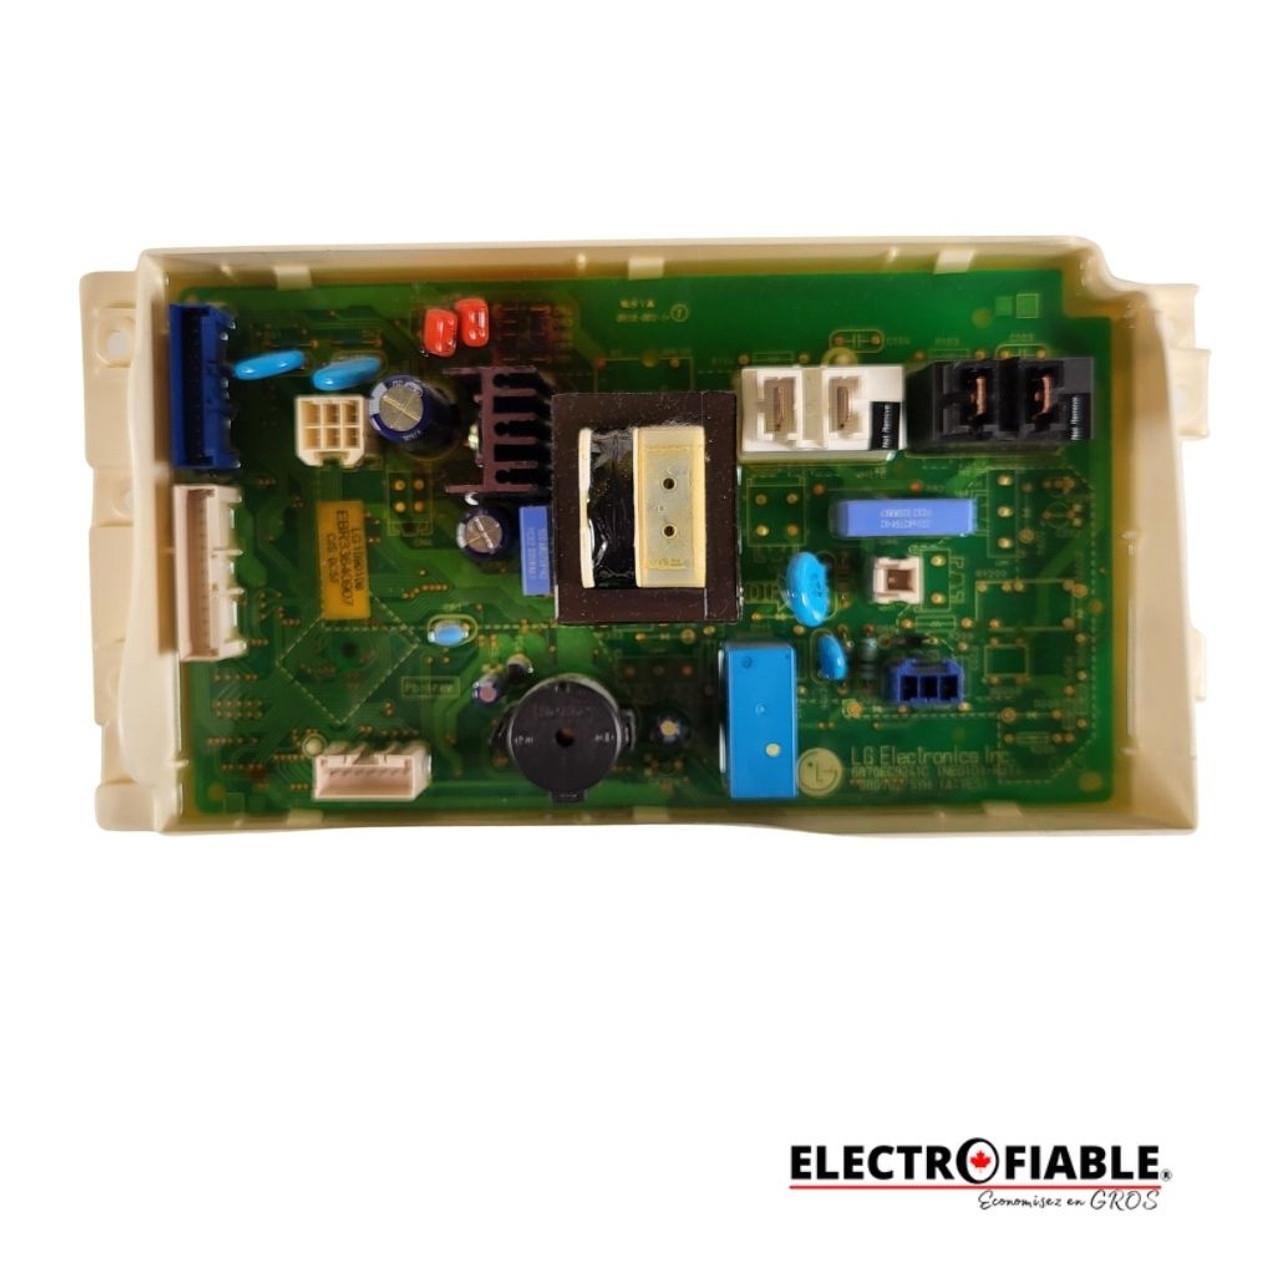 EBR33640907 Control board for LG dryer